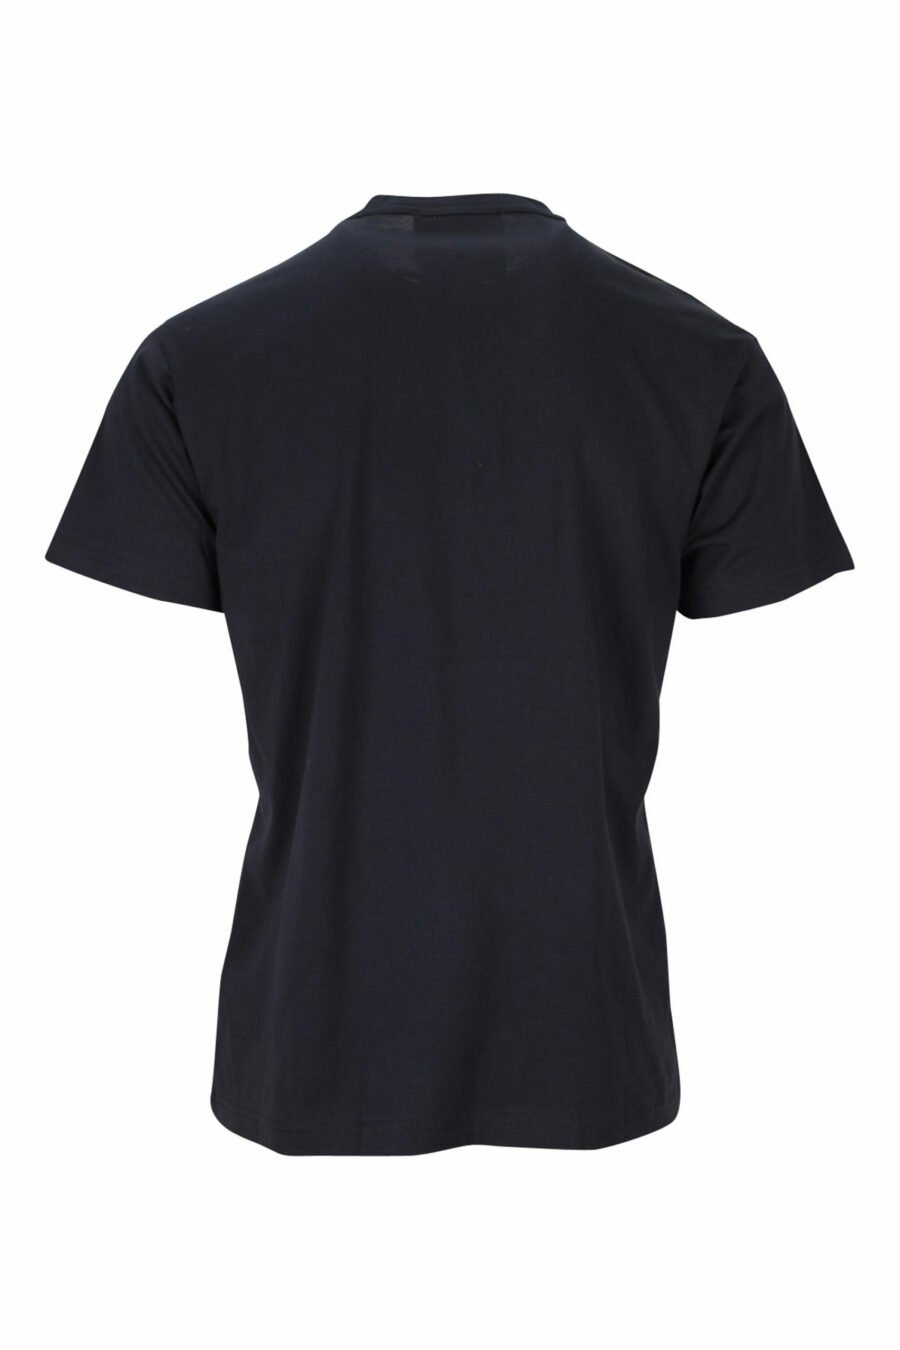 Schwarzes T-shirt mit rotem Hund maxilogo - 8052019475180 1 skaliert